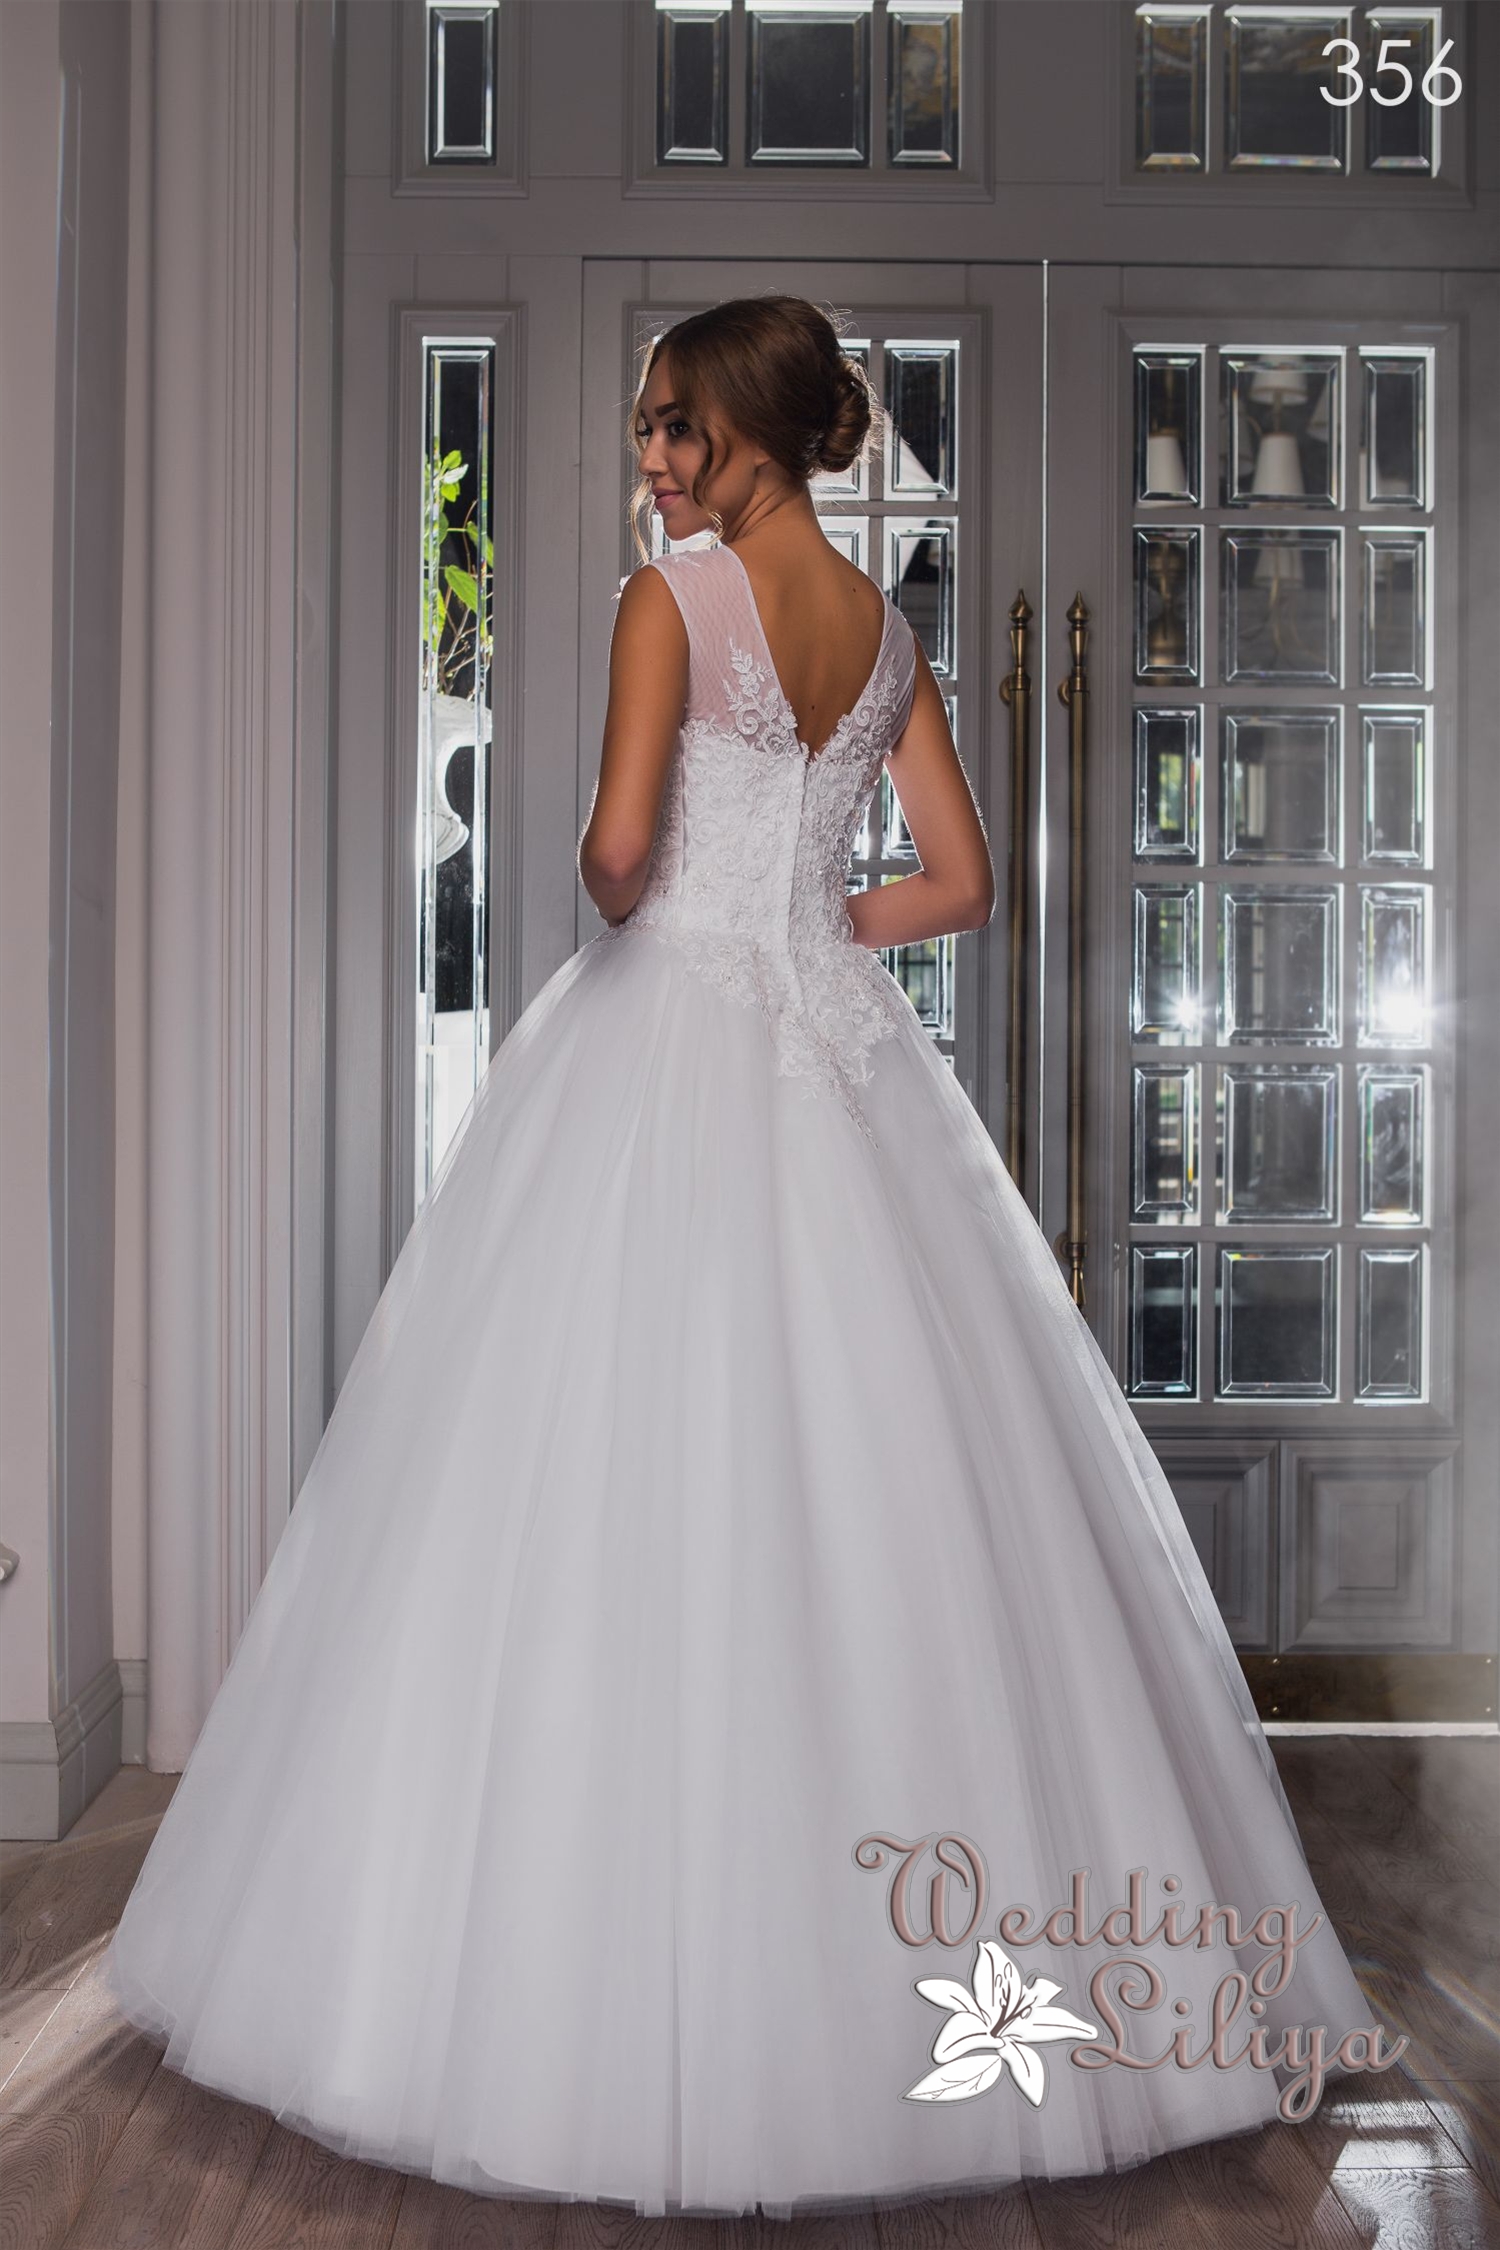 Свадебное платье №356